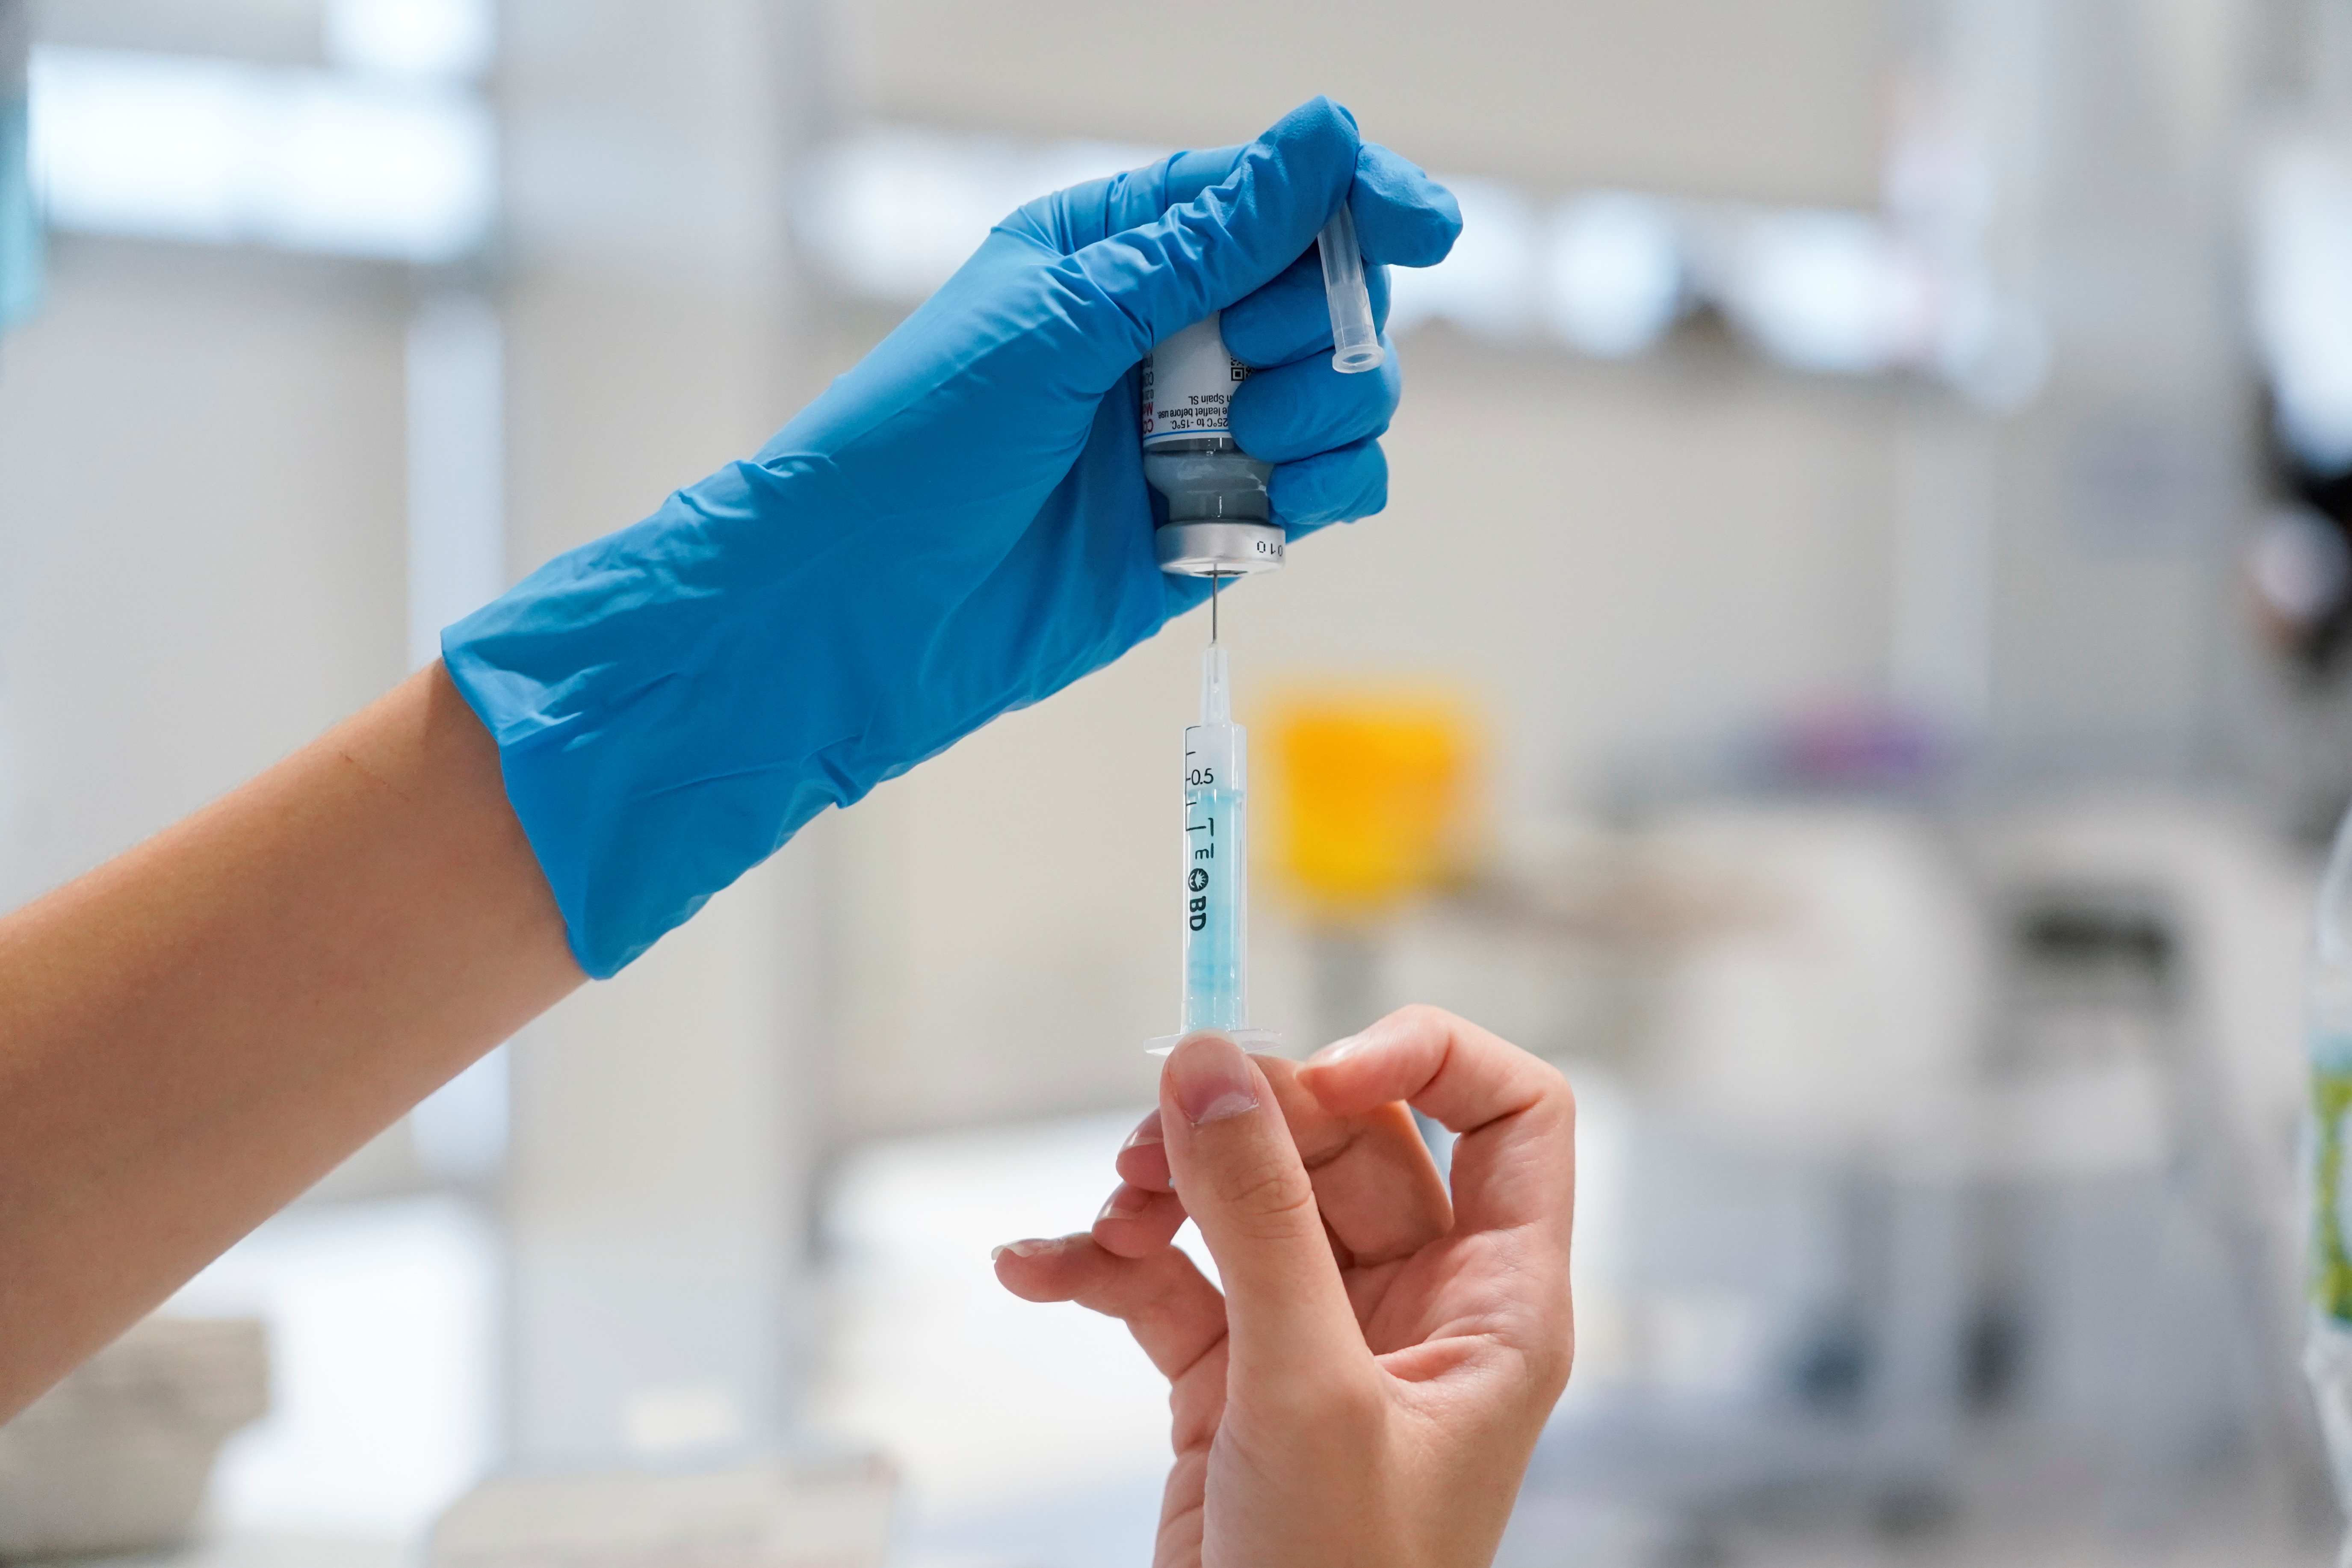 Une infirmière prépare une seringue avec une dose du vaccin contre la maladie à coronavirus Moderna (COVID-19) à l'hôpital Enfermera Isabel Zendal de Madrid, en Espagne, le 23 juillet 2021. REUTERS/Juan Medina